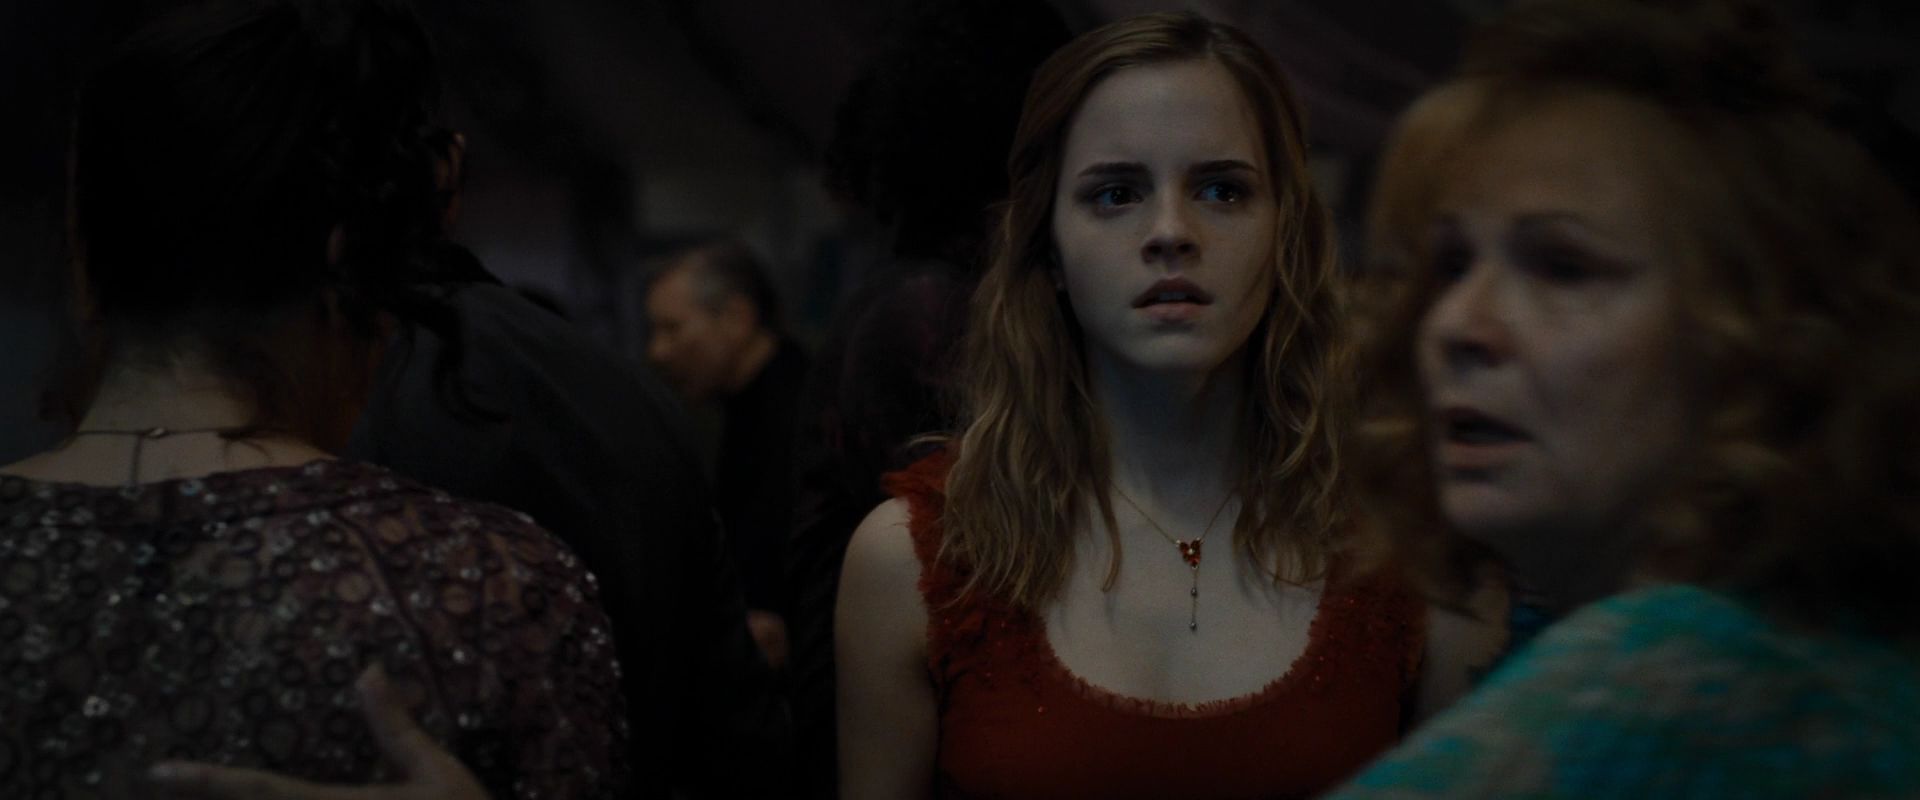 হের্মীয়নে গ্রানজার Photo: Hermione in Red Dress.